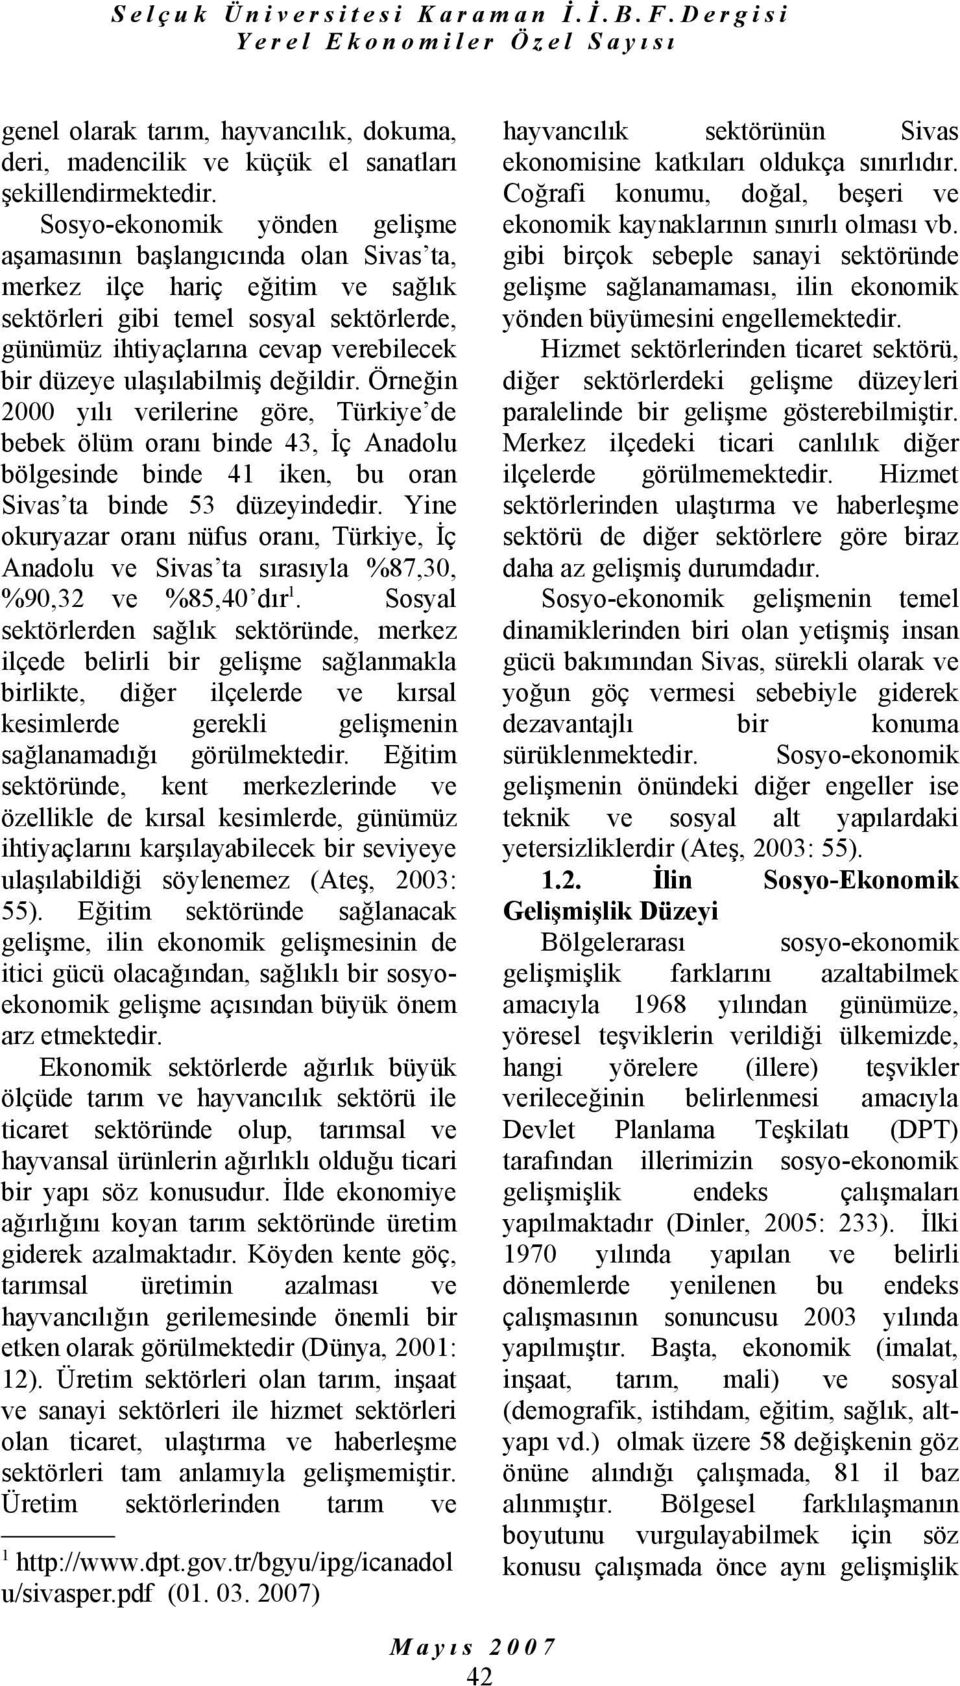 ulaşılabilmiş değildir. Örneğin 2000 yılı verilerine göre, Türkiye de bebek ölüm oranı binde 43, İç Anadolu bölgesinde binde 41 iken, bu oran Sivas ta binde 53 düzeyindedir.